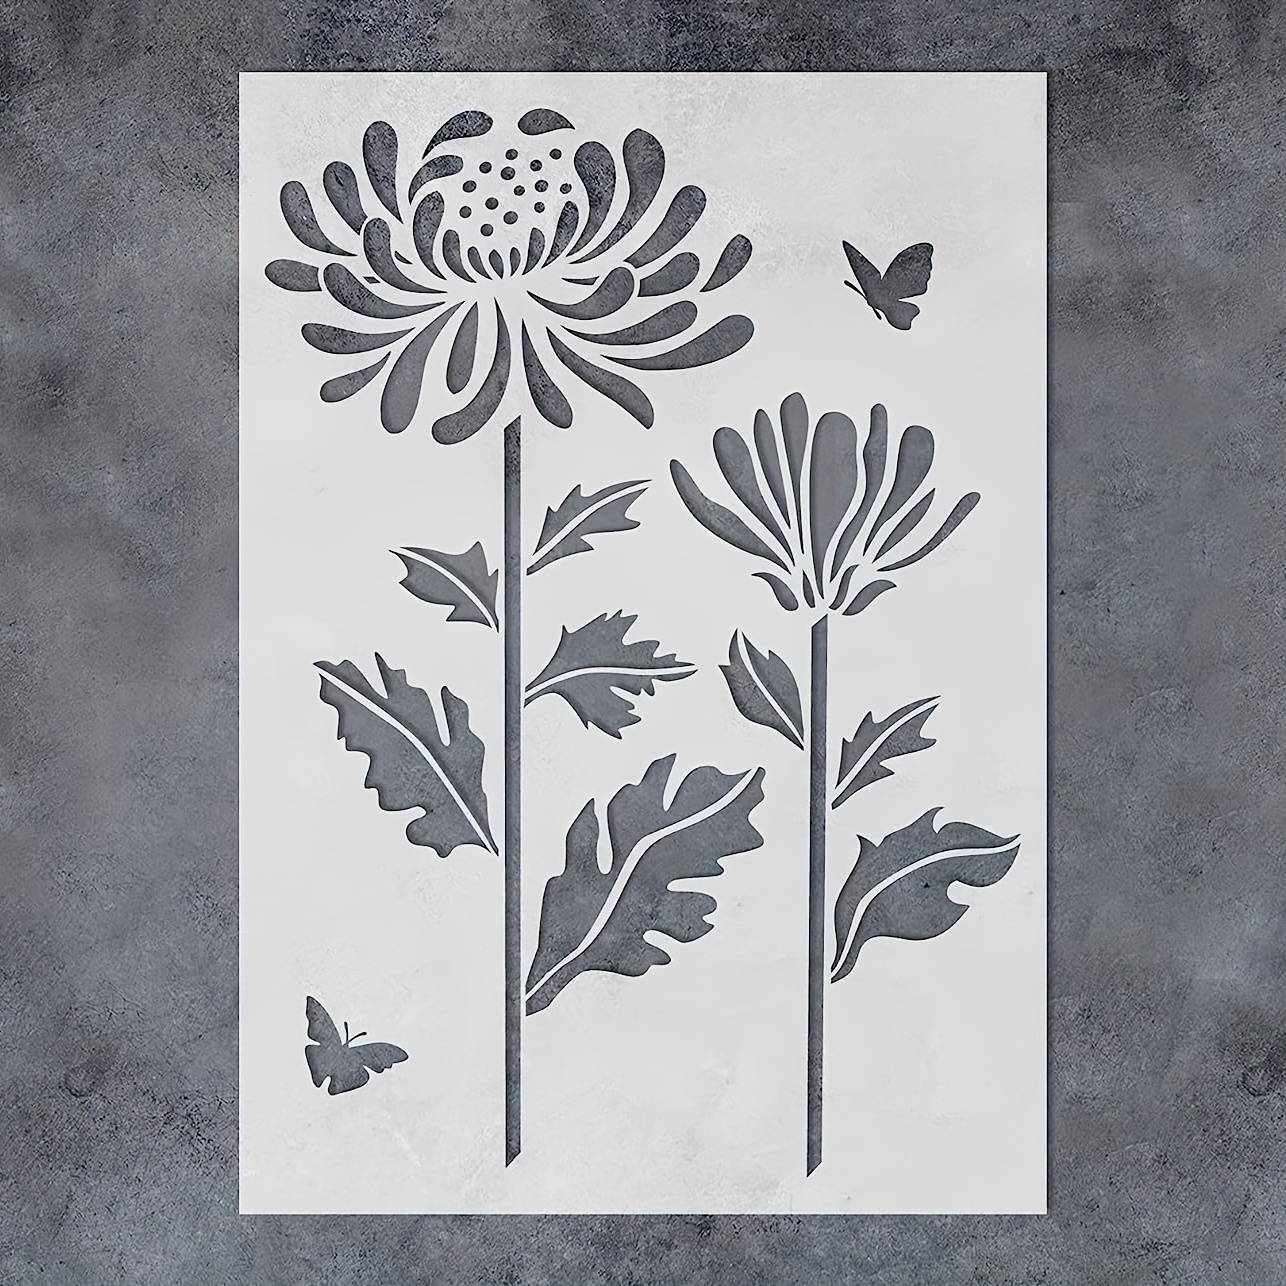 Plantillas de margaritas: plantilla de flores de 12.0 x 16.0 in para pintar  sobre madera, lienzo, papel, tela, suelo, pared, muebles. Plantillas de pa